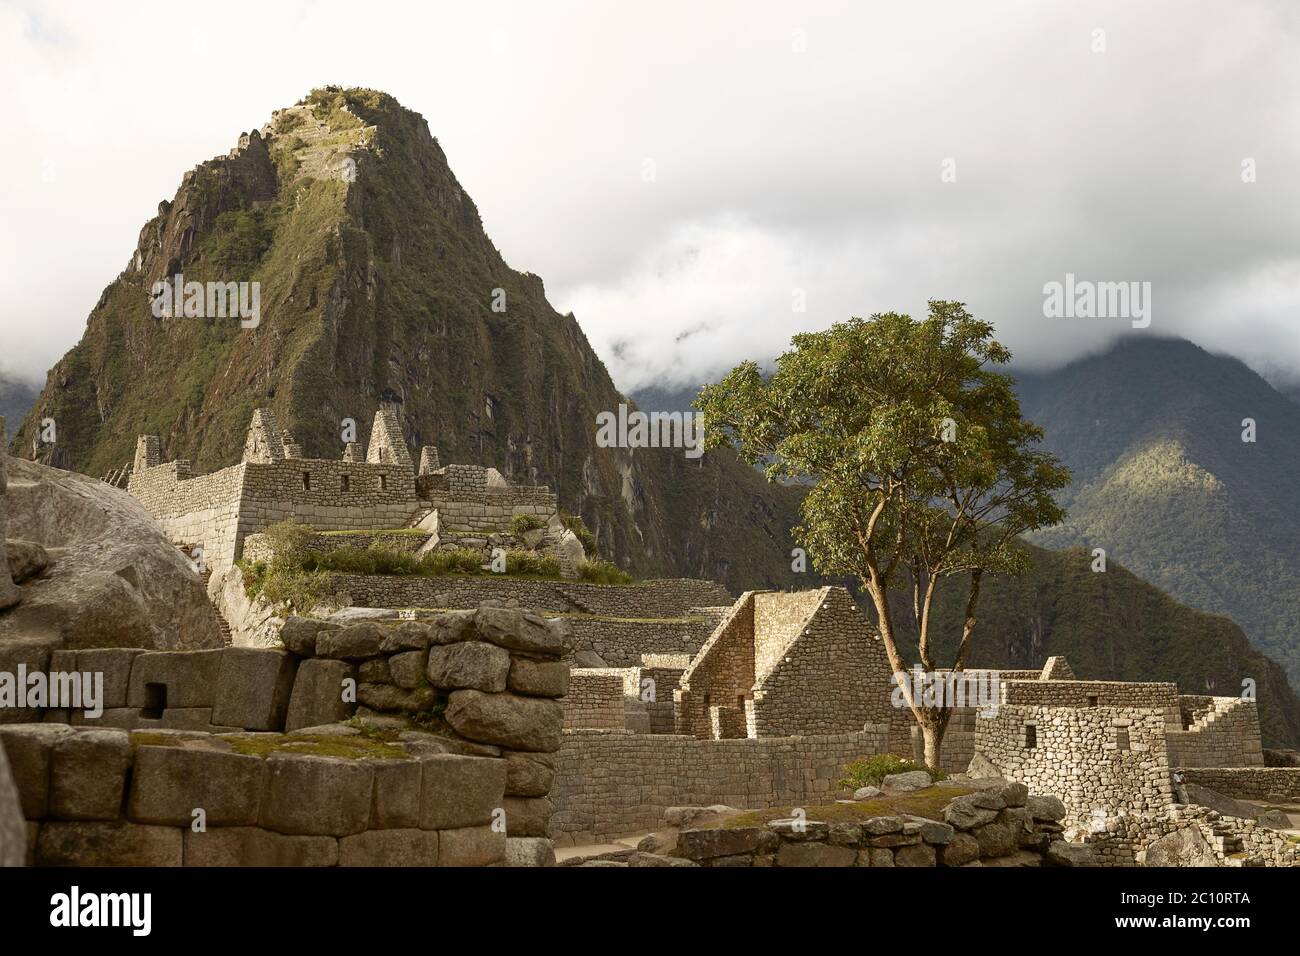 Ruins of Lost Incan City Machu Picchu and Wayna Picchu near Cusco in Peru Stock Photo